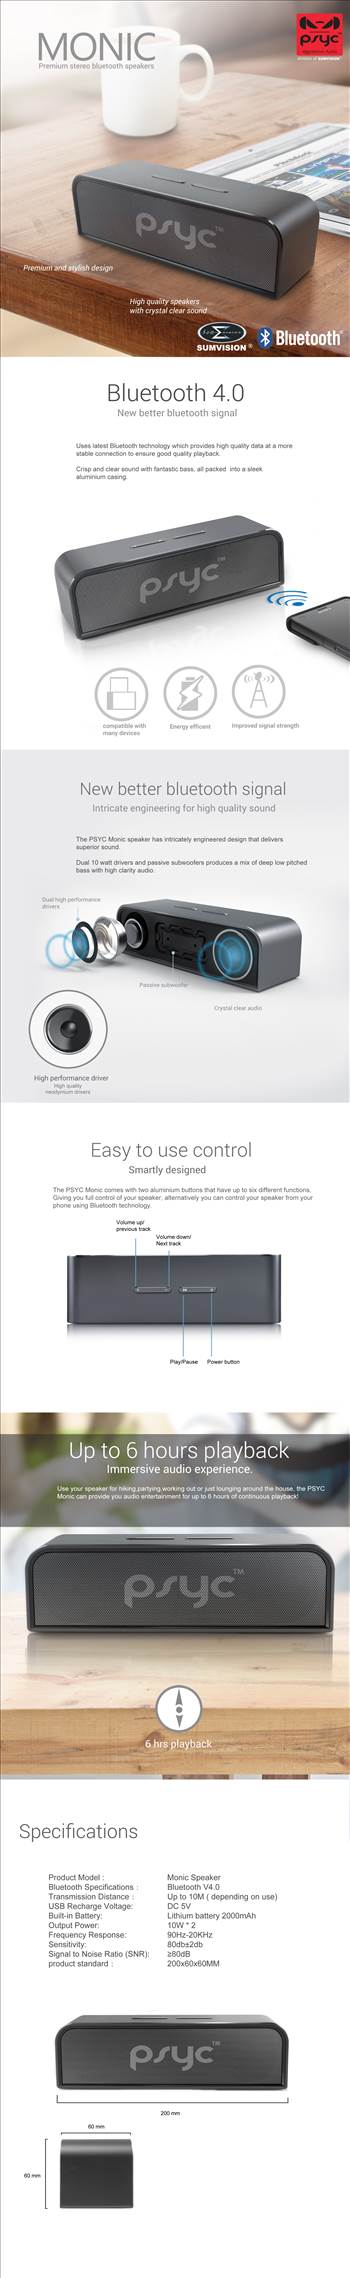 monic speaker brochure.jpg - 